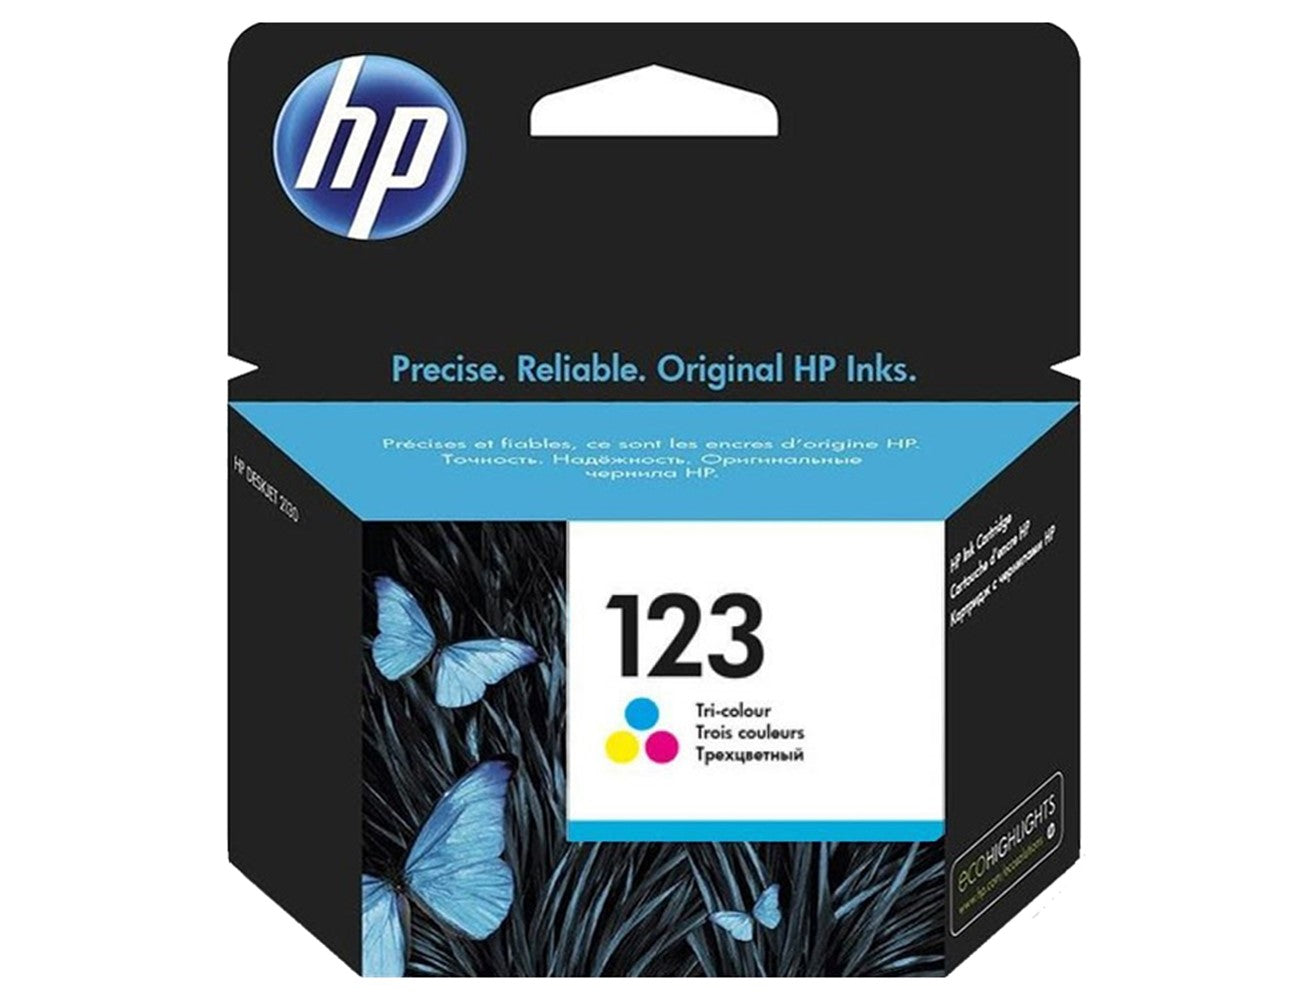 HP 123 Original Tri-color Ink Cartridge